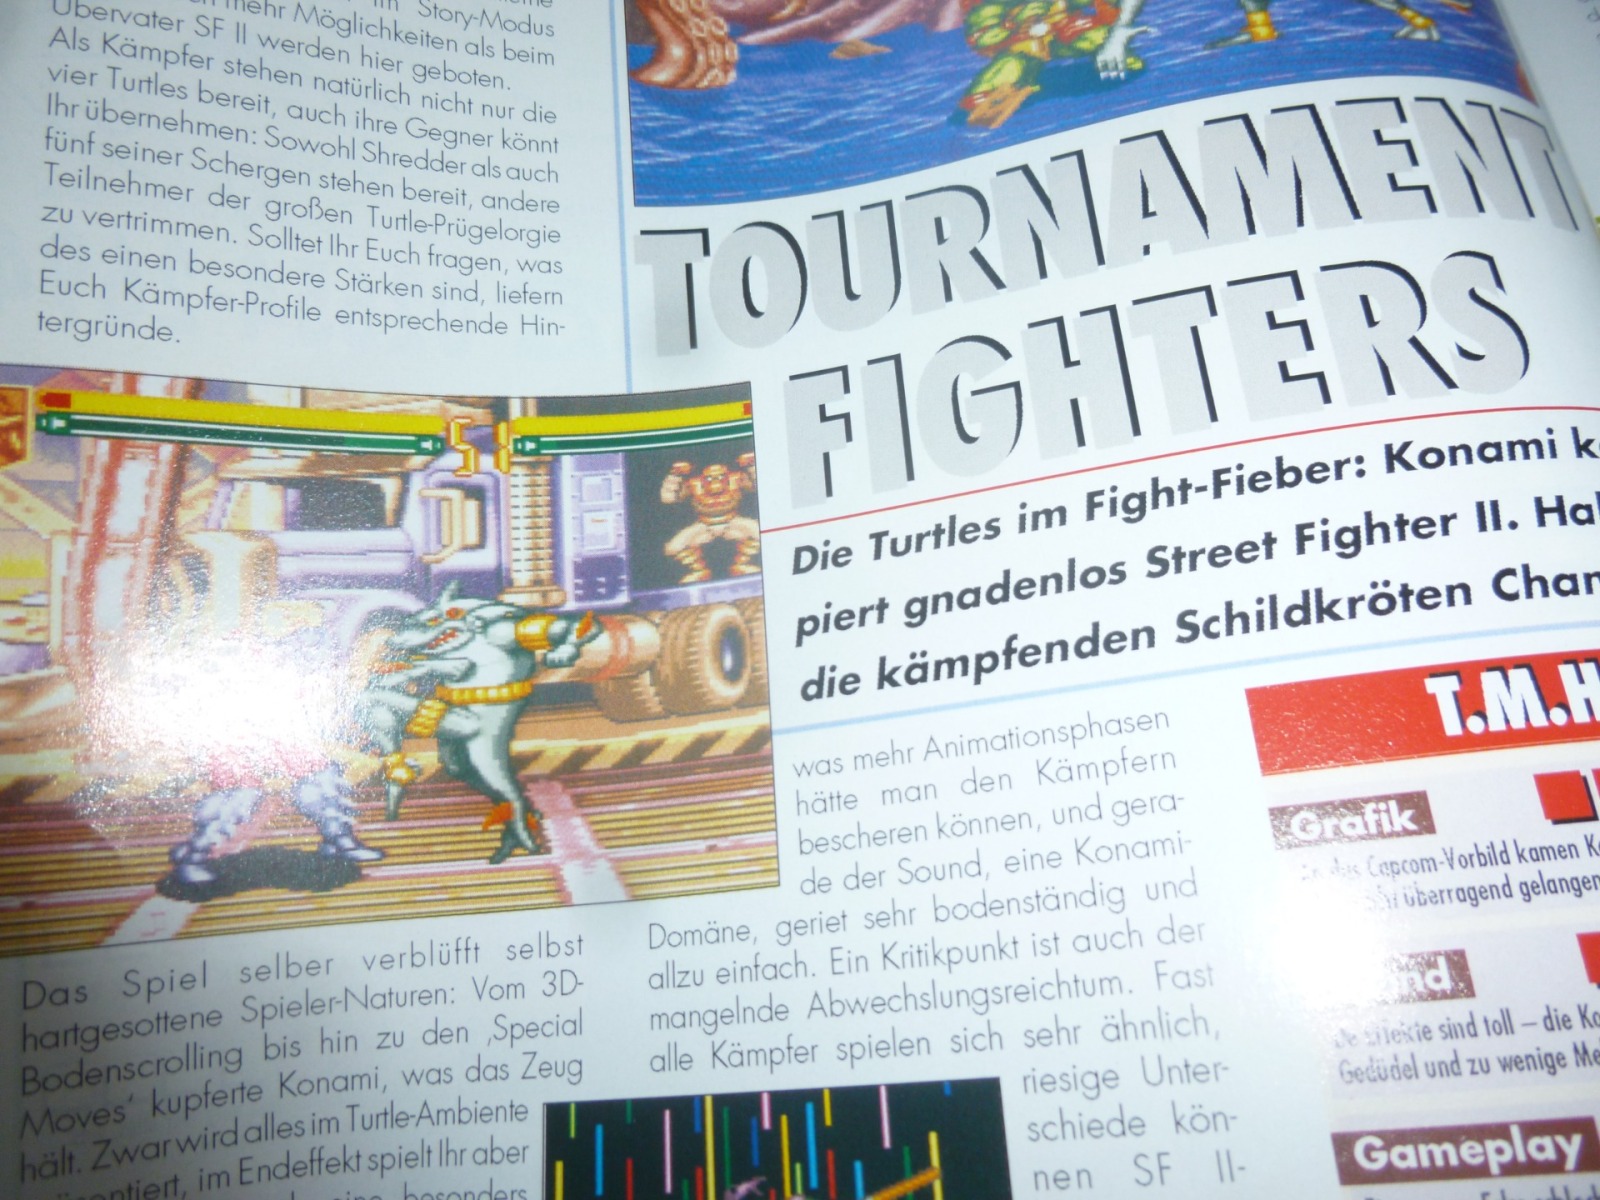 TOTAL Das unabhängige Magazin - 100% Nintendo - Ausgabe 12/93 1993 11